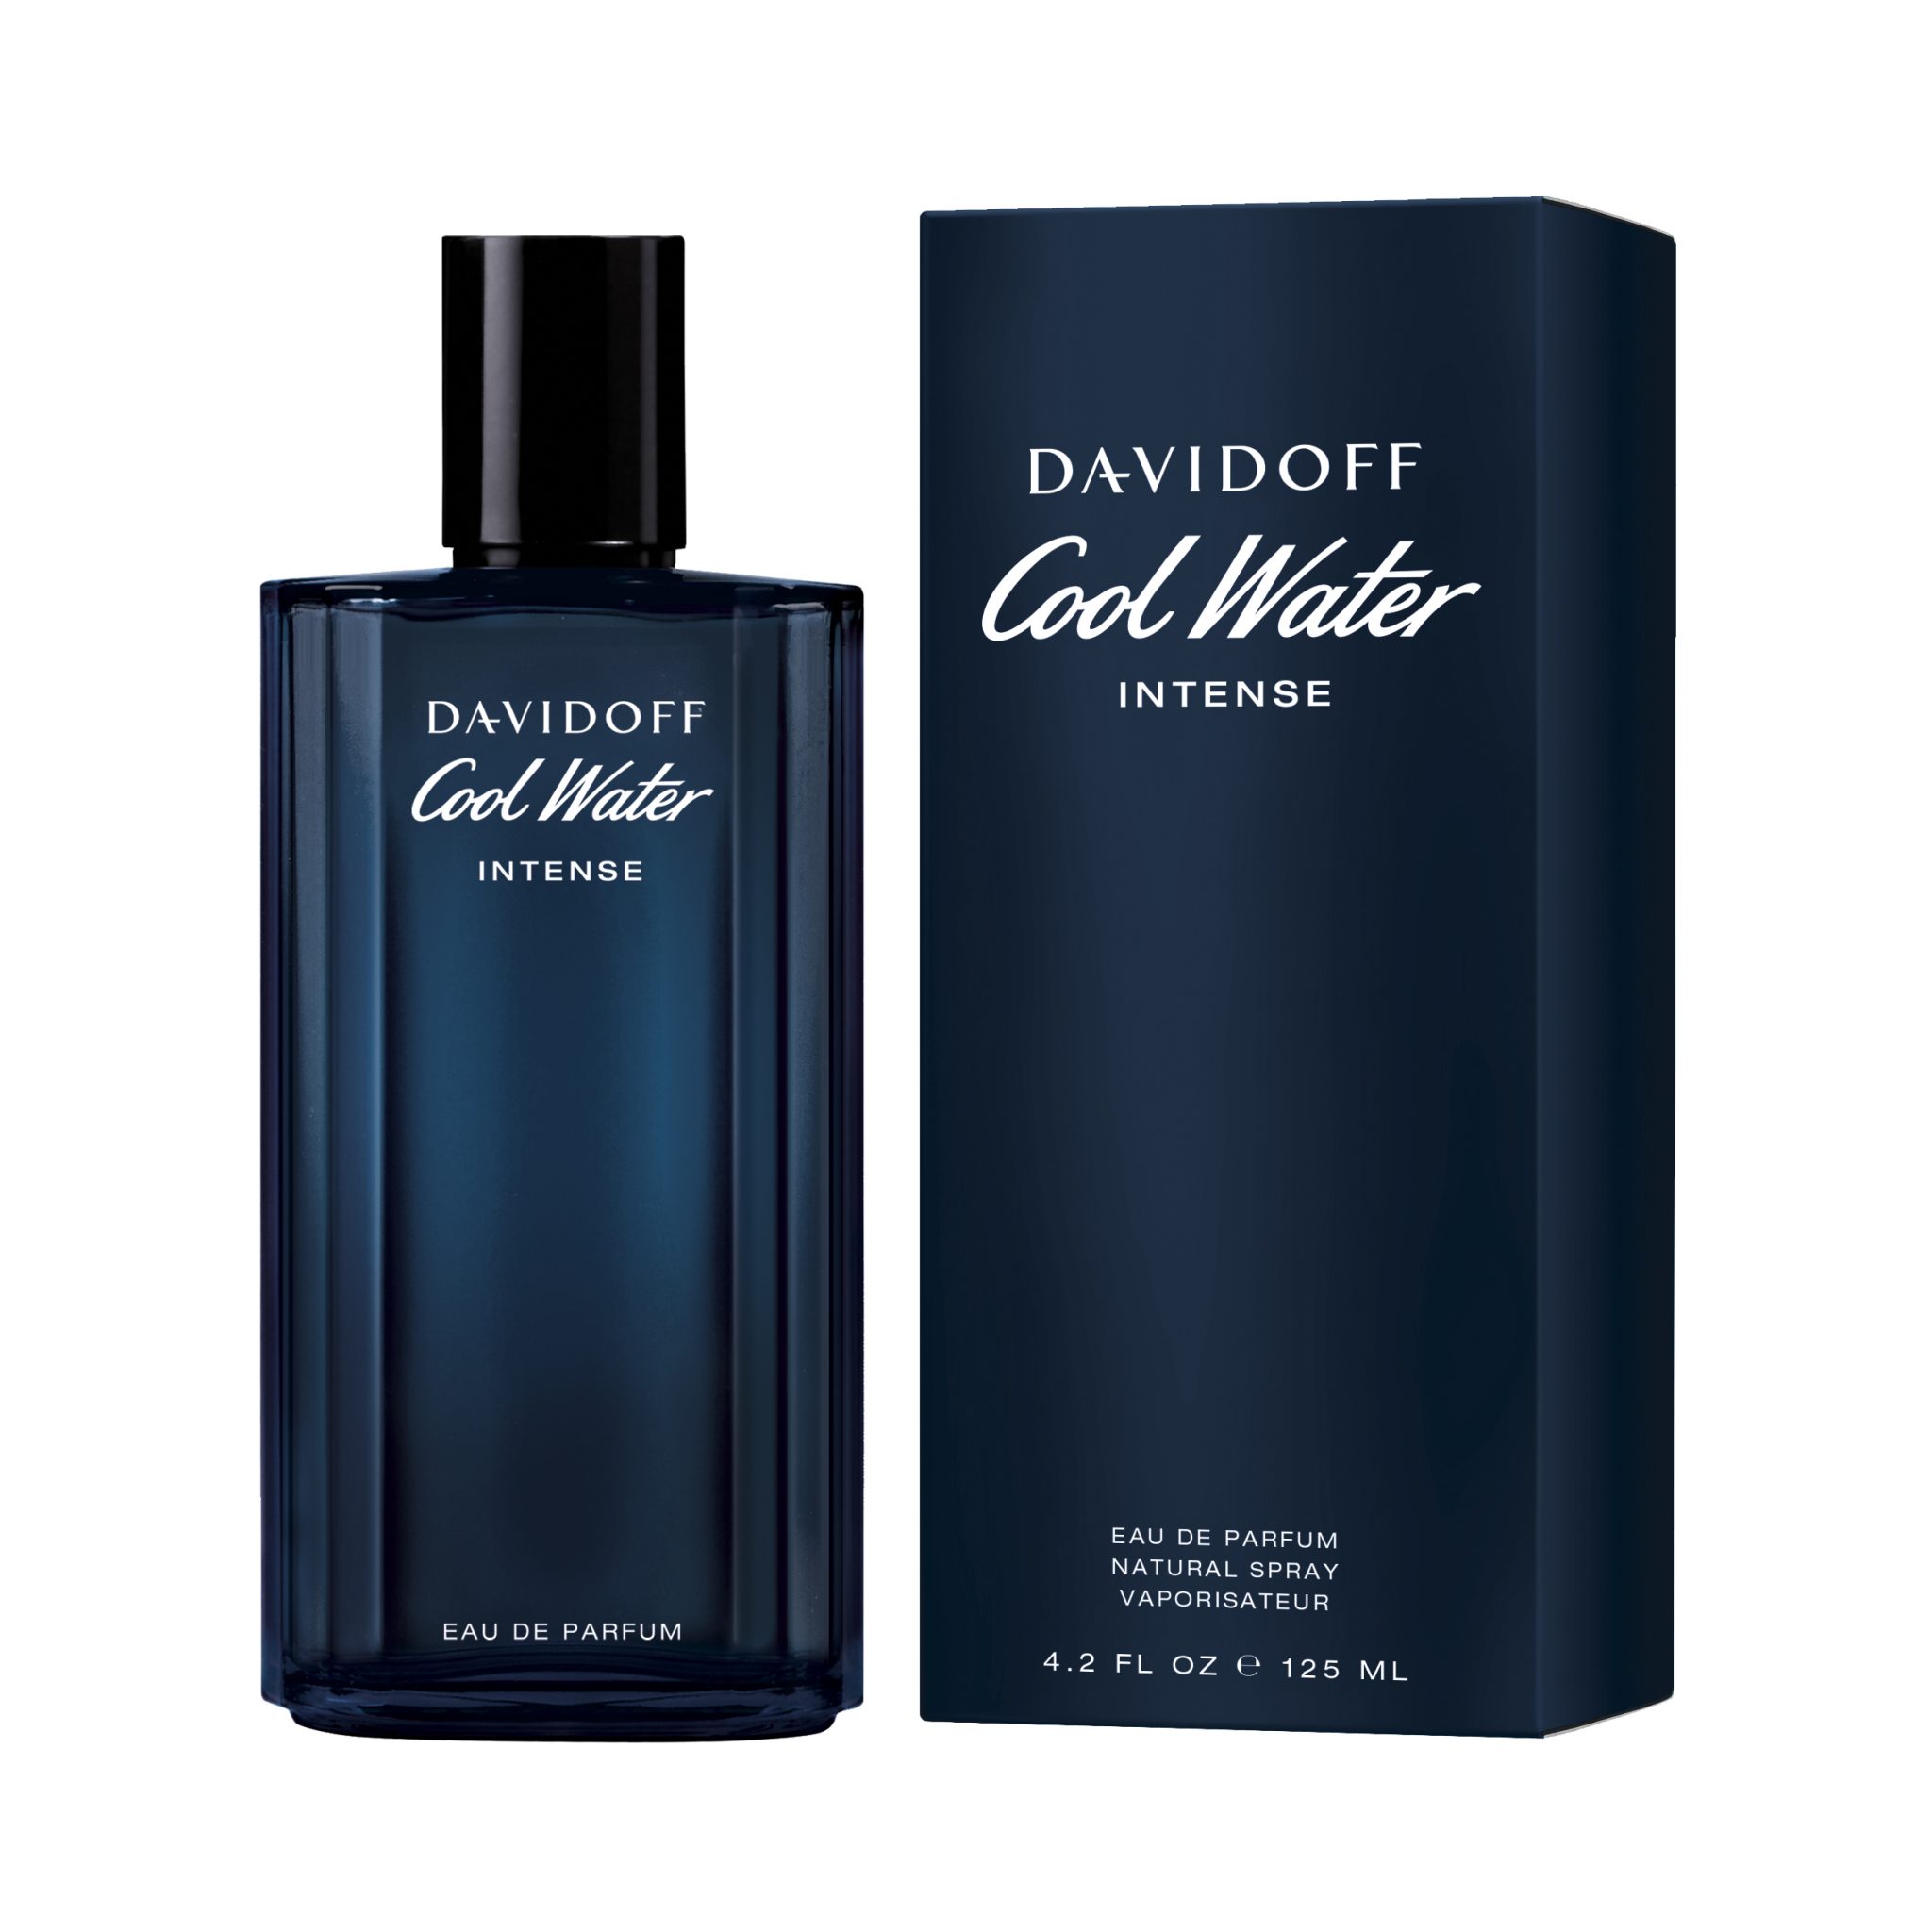 Davidoff Parfum - Homecare24